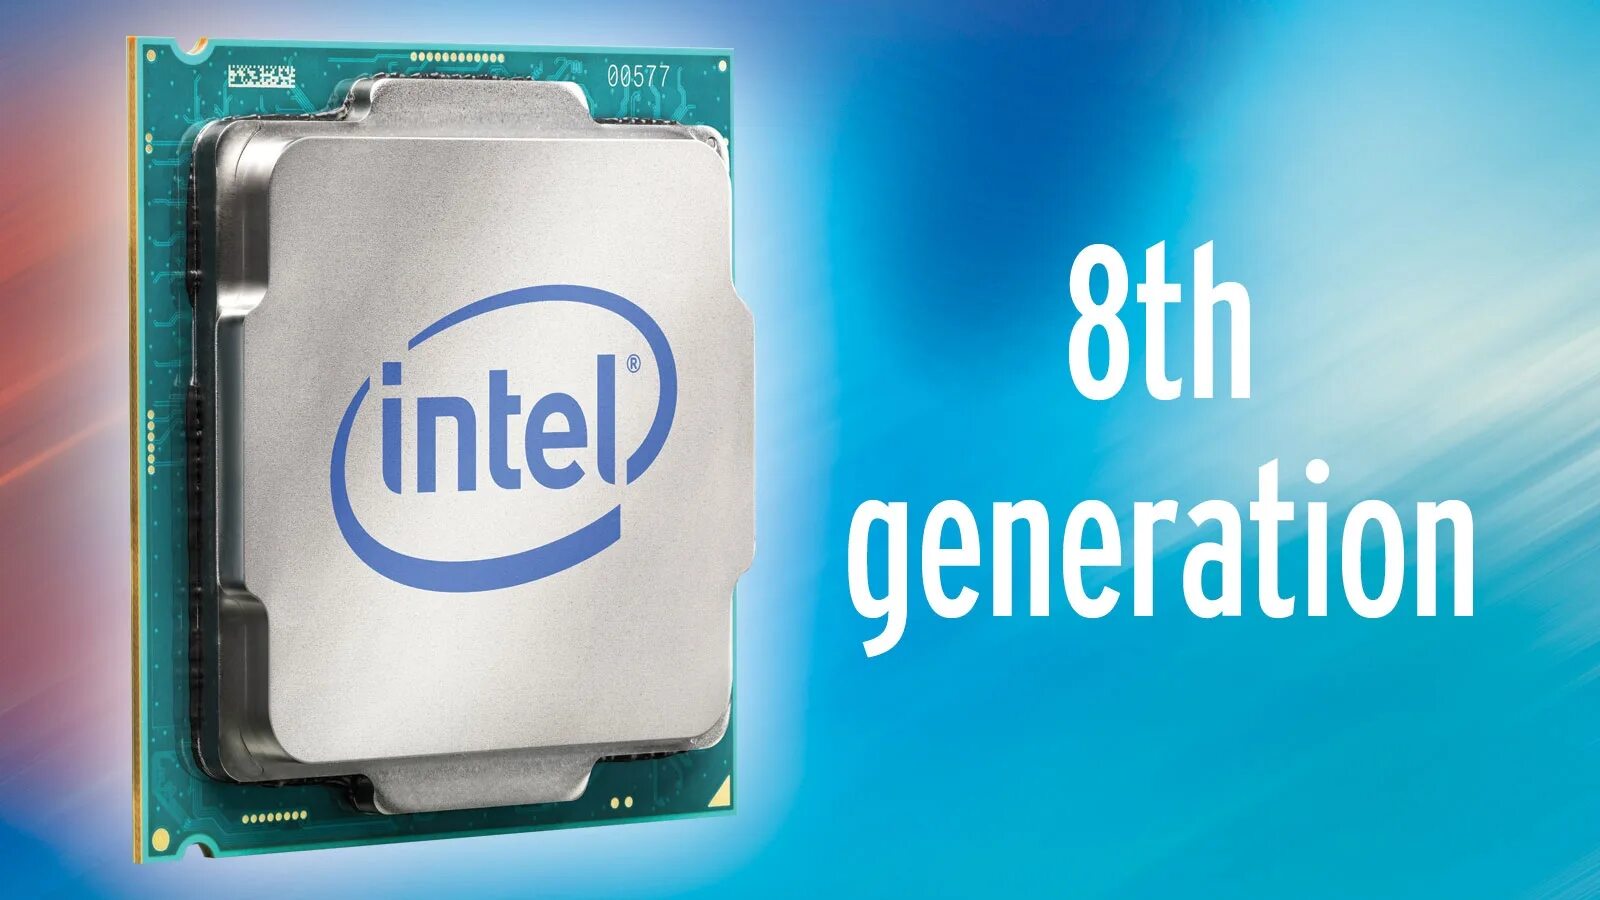 Процессор Intel Core i7 Coffee Lake. Intel Core 8th Gen. Процессор Intel Core i7 Coffee Lake чипсет. Процессор Intel Core i7-8700k. Intel 8 series